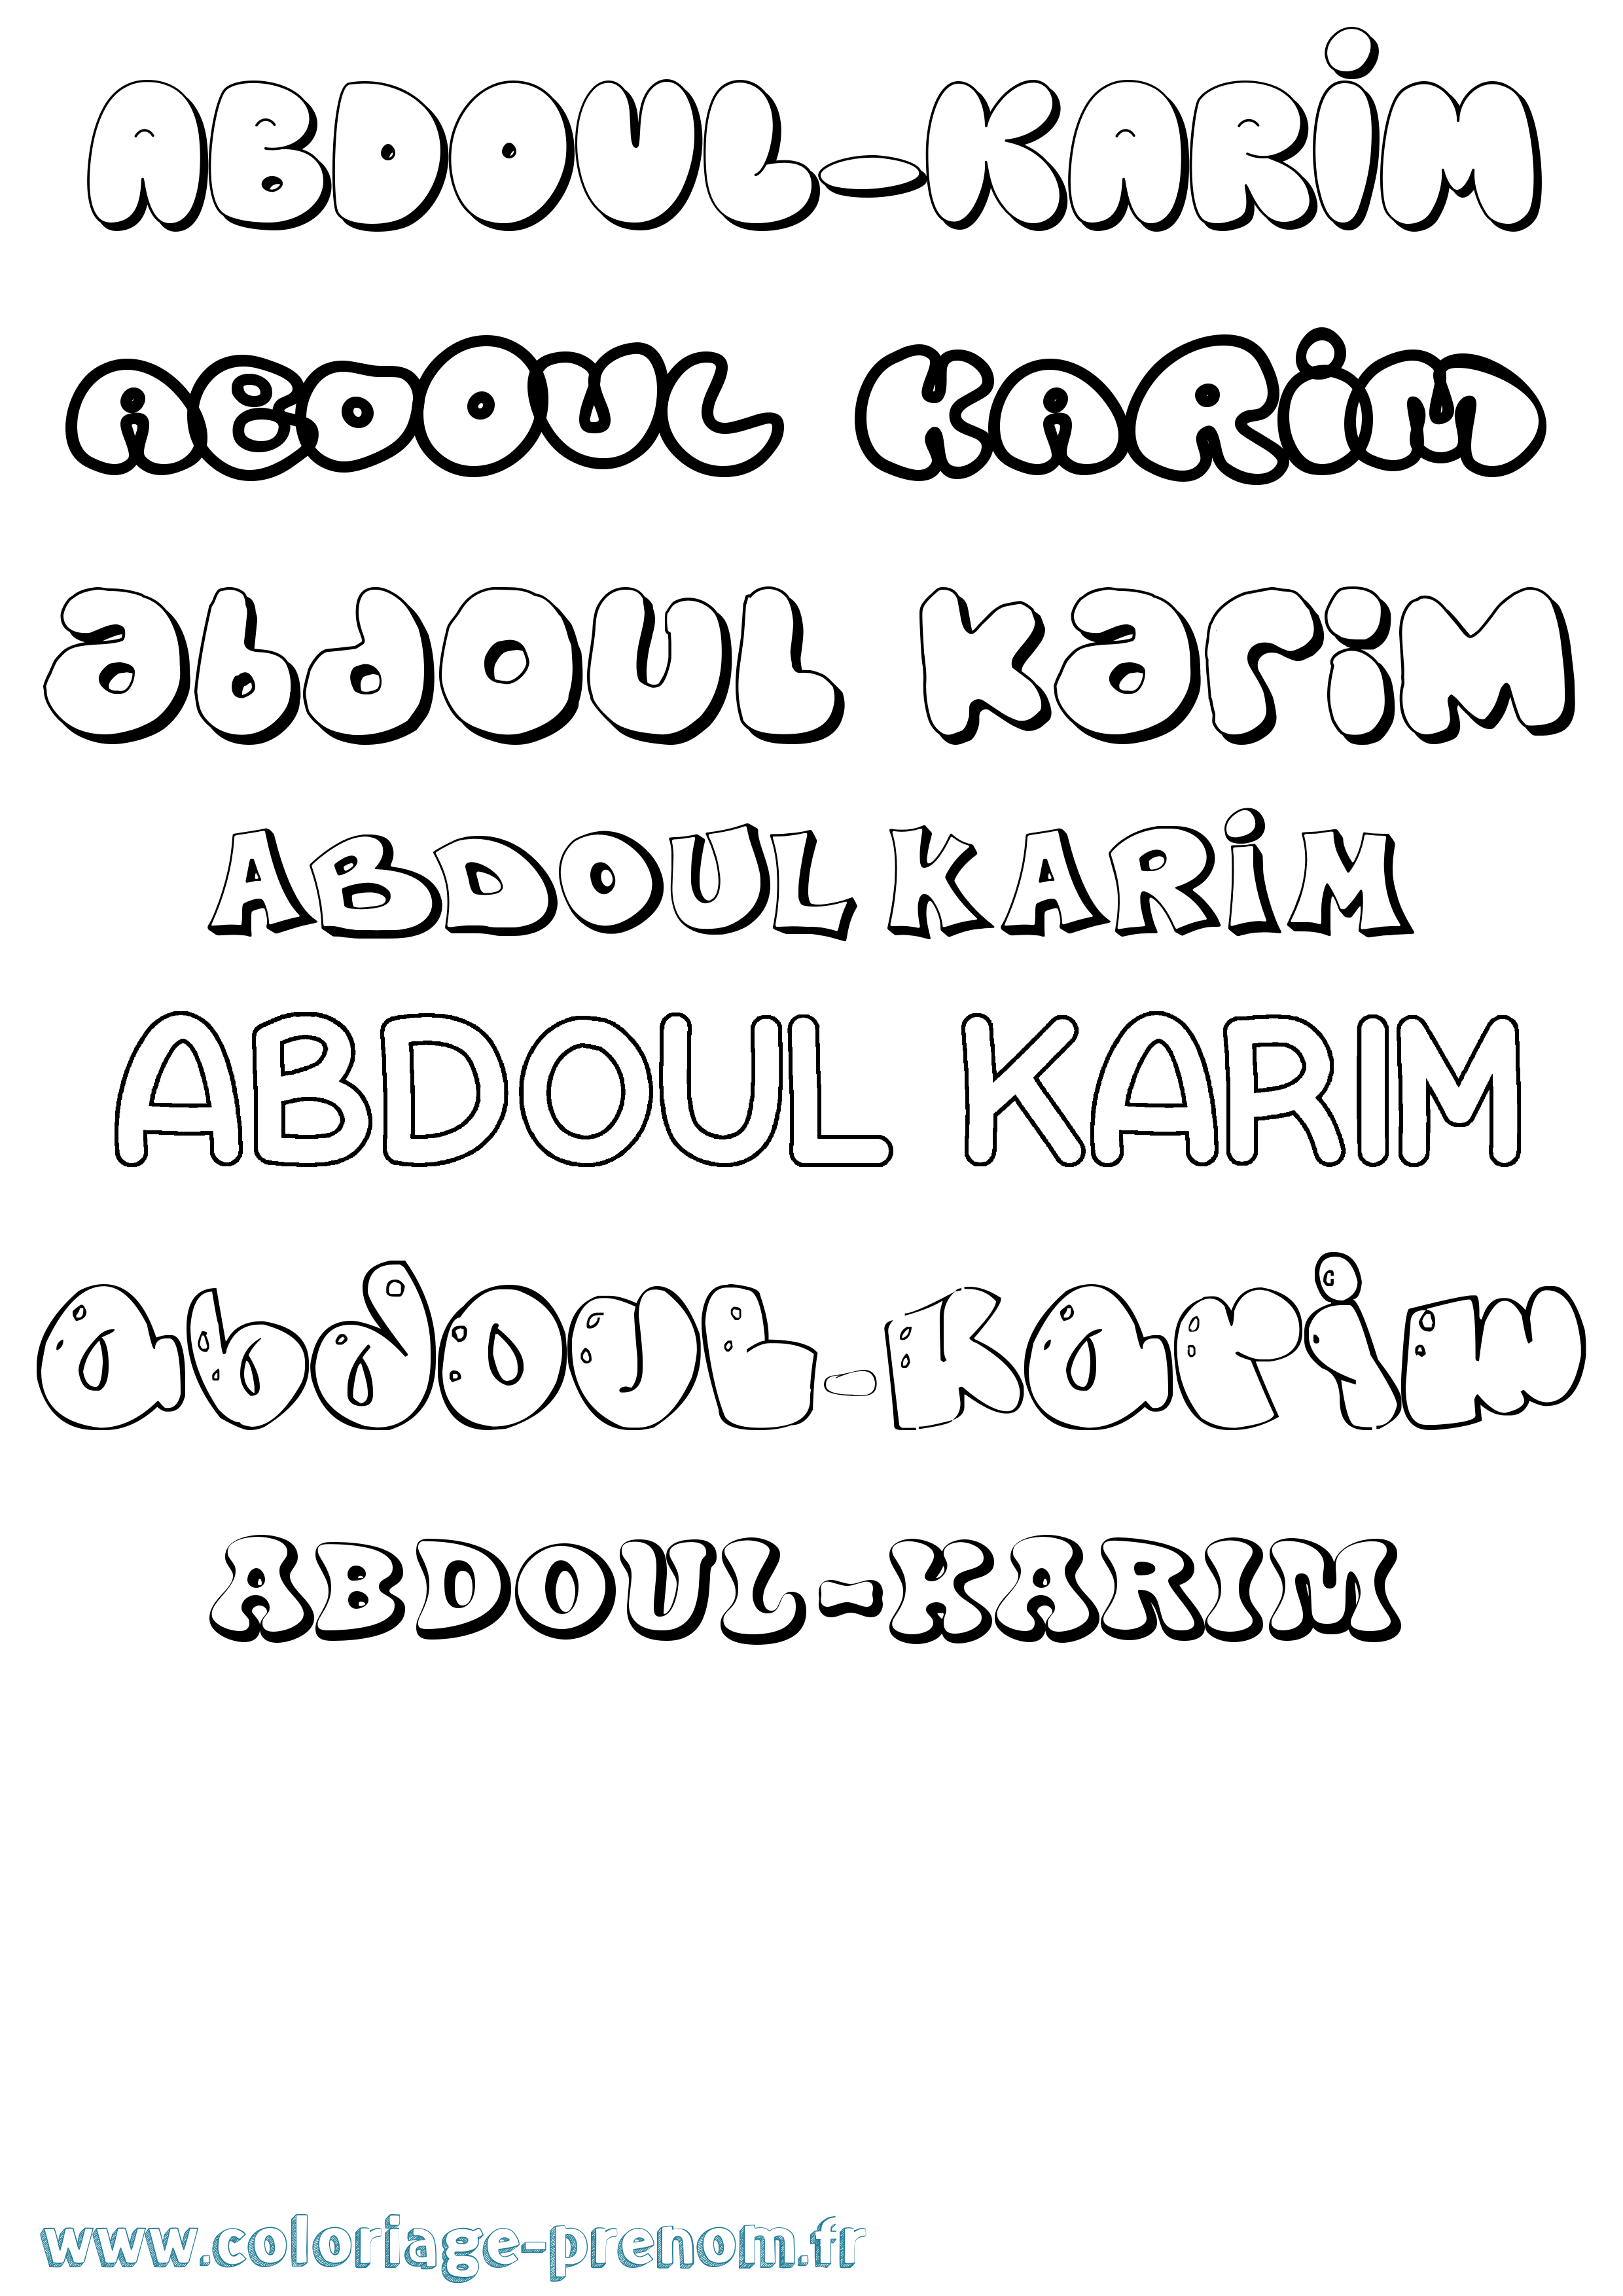 Coloriage prénom Abdoul-Karim Bubble